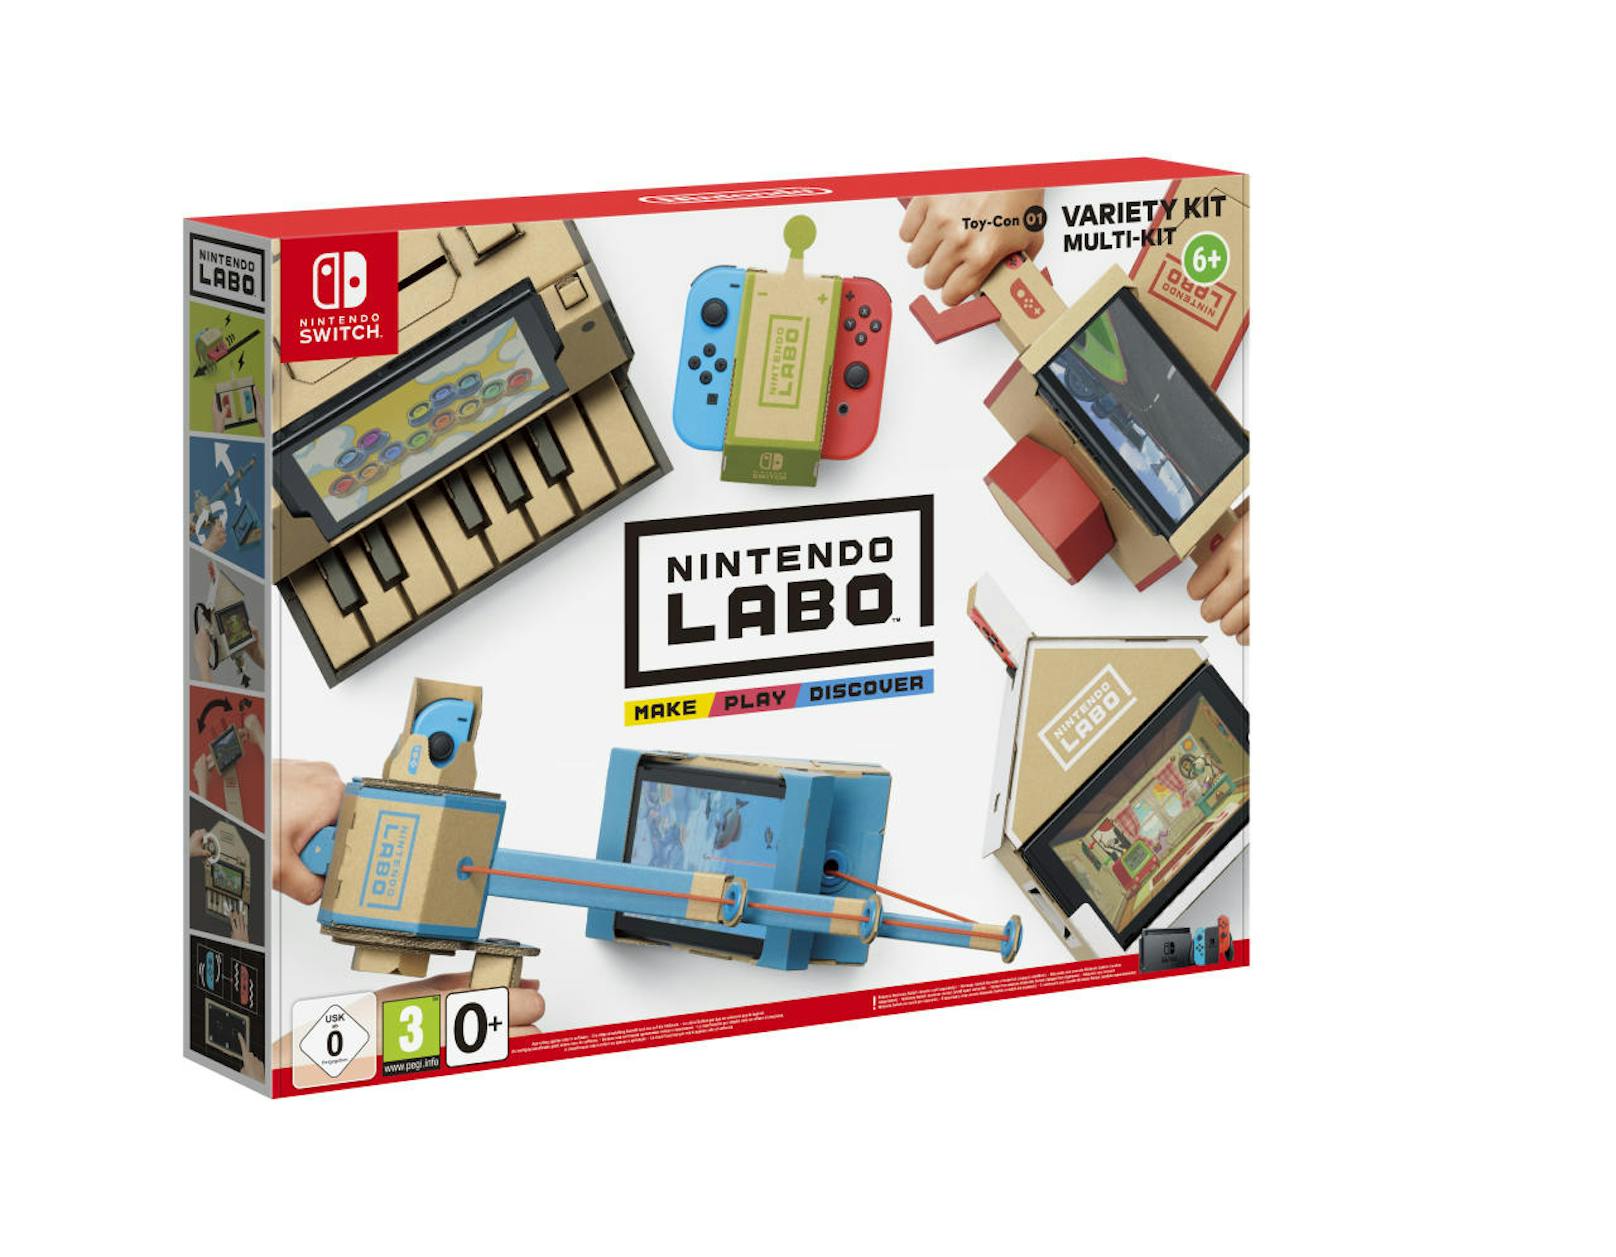 Nintendo Labo wird zum Start in zwei verschiedenen Sets angeboten. Das Multi-Set enthält fünf verschiedene Konstruktionen: das RC-Auto, die Angel, das Haus, das Motorrad und das Klavier. Kostenpunkt: 69,99 Euro.